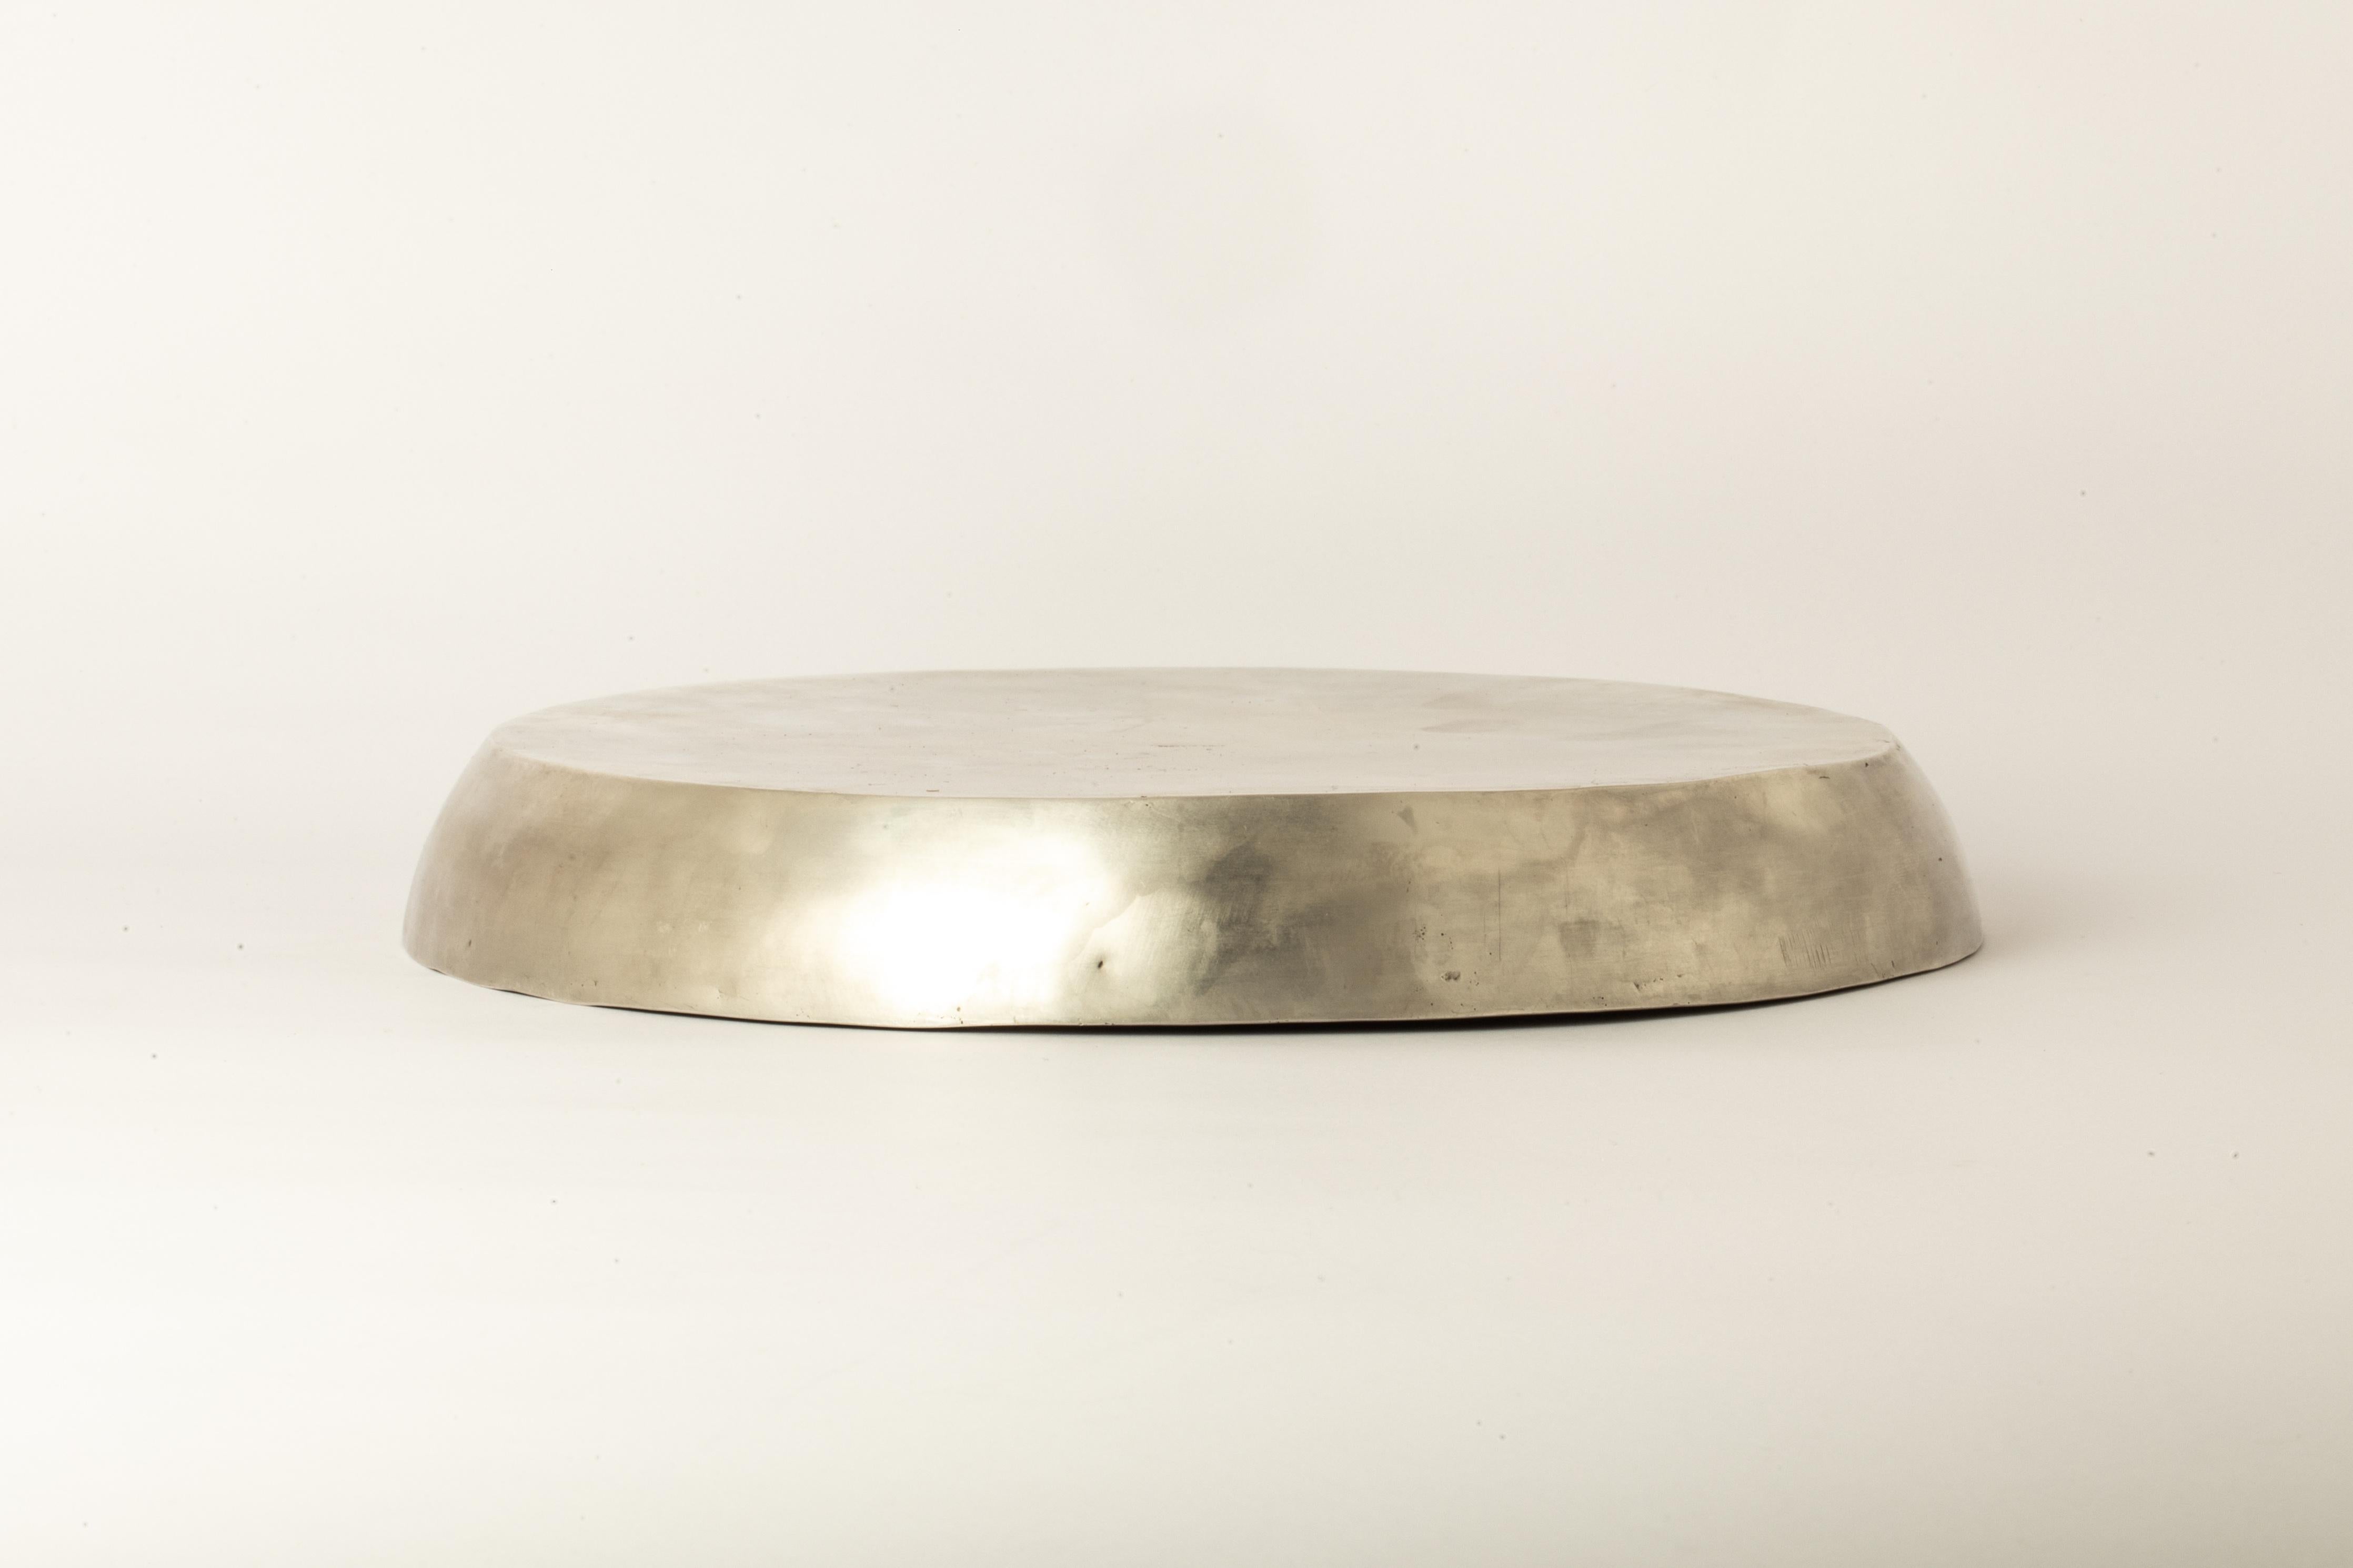 Dieser Teller ist aus Messing handgefertigt. Das Messing-Substrat wird galvanisch mit Silber beschichtet und dann in Säure getaucht, um die subtil zerstörte Oberfläche zu erzeugen. Sie ist ein Meisterwerk der Metallverarbeitung und wurde mit größter